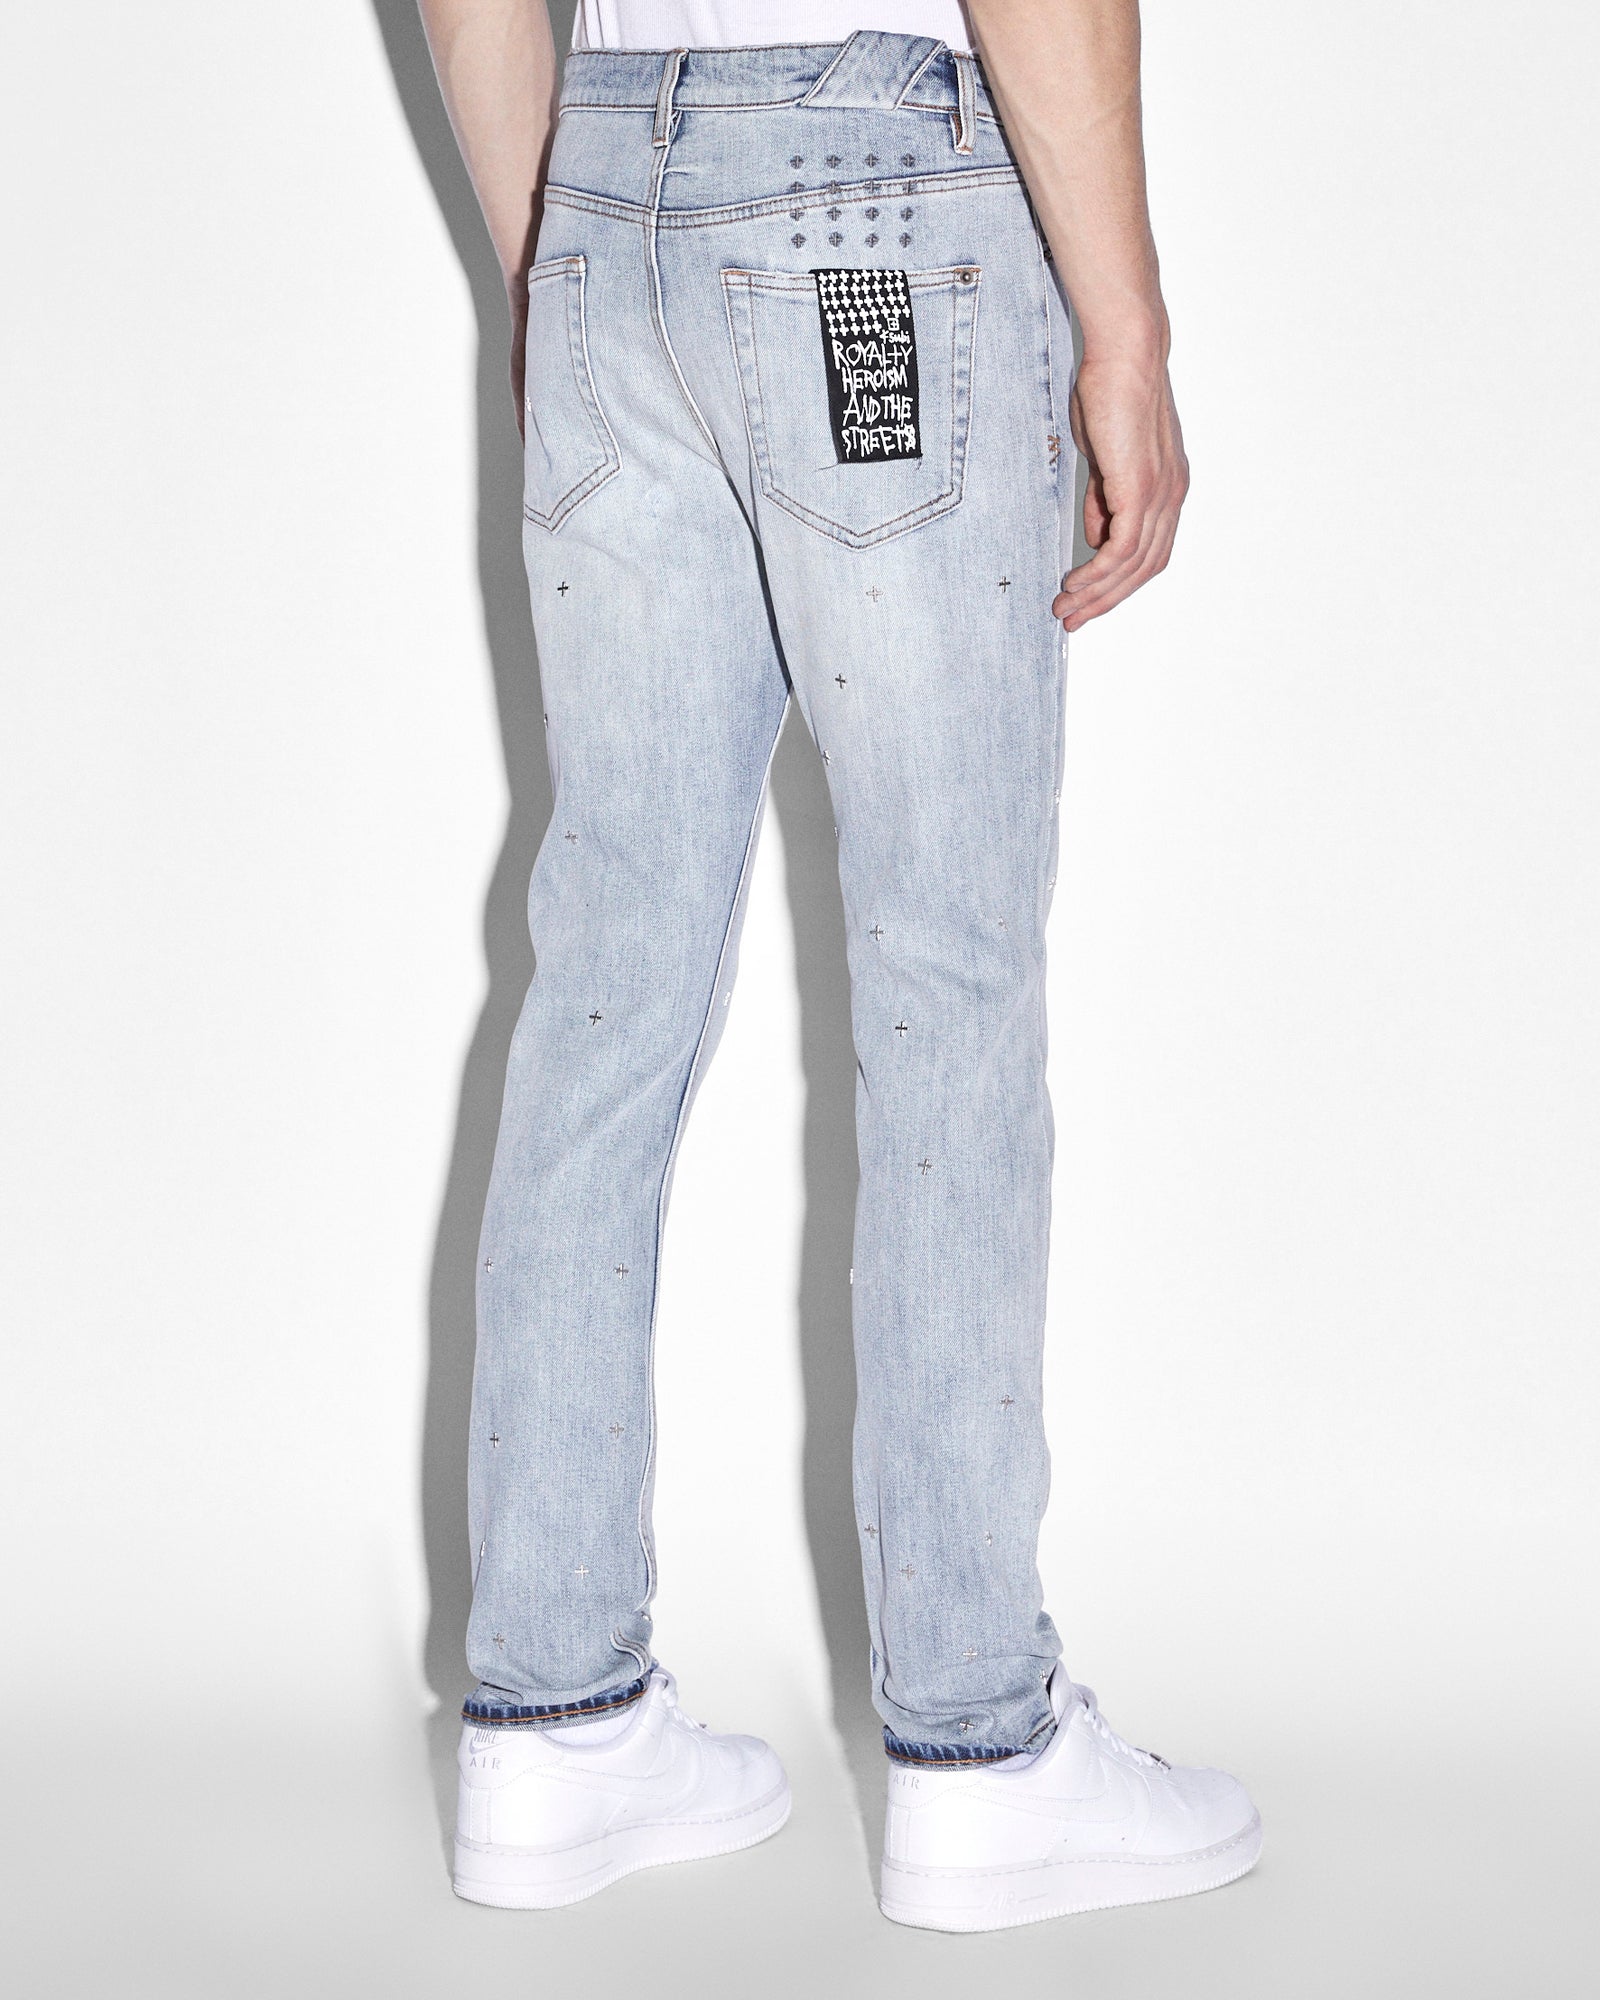 Chitch Metalik Slim Fit Jeans - Blue Denim | Ksubi ++